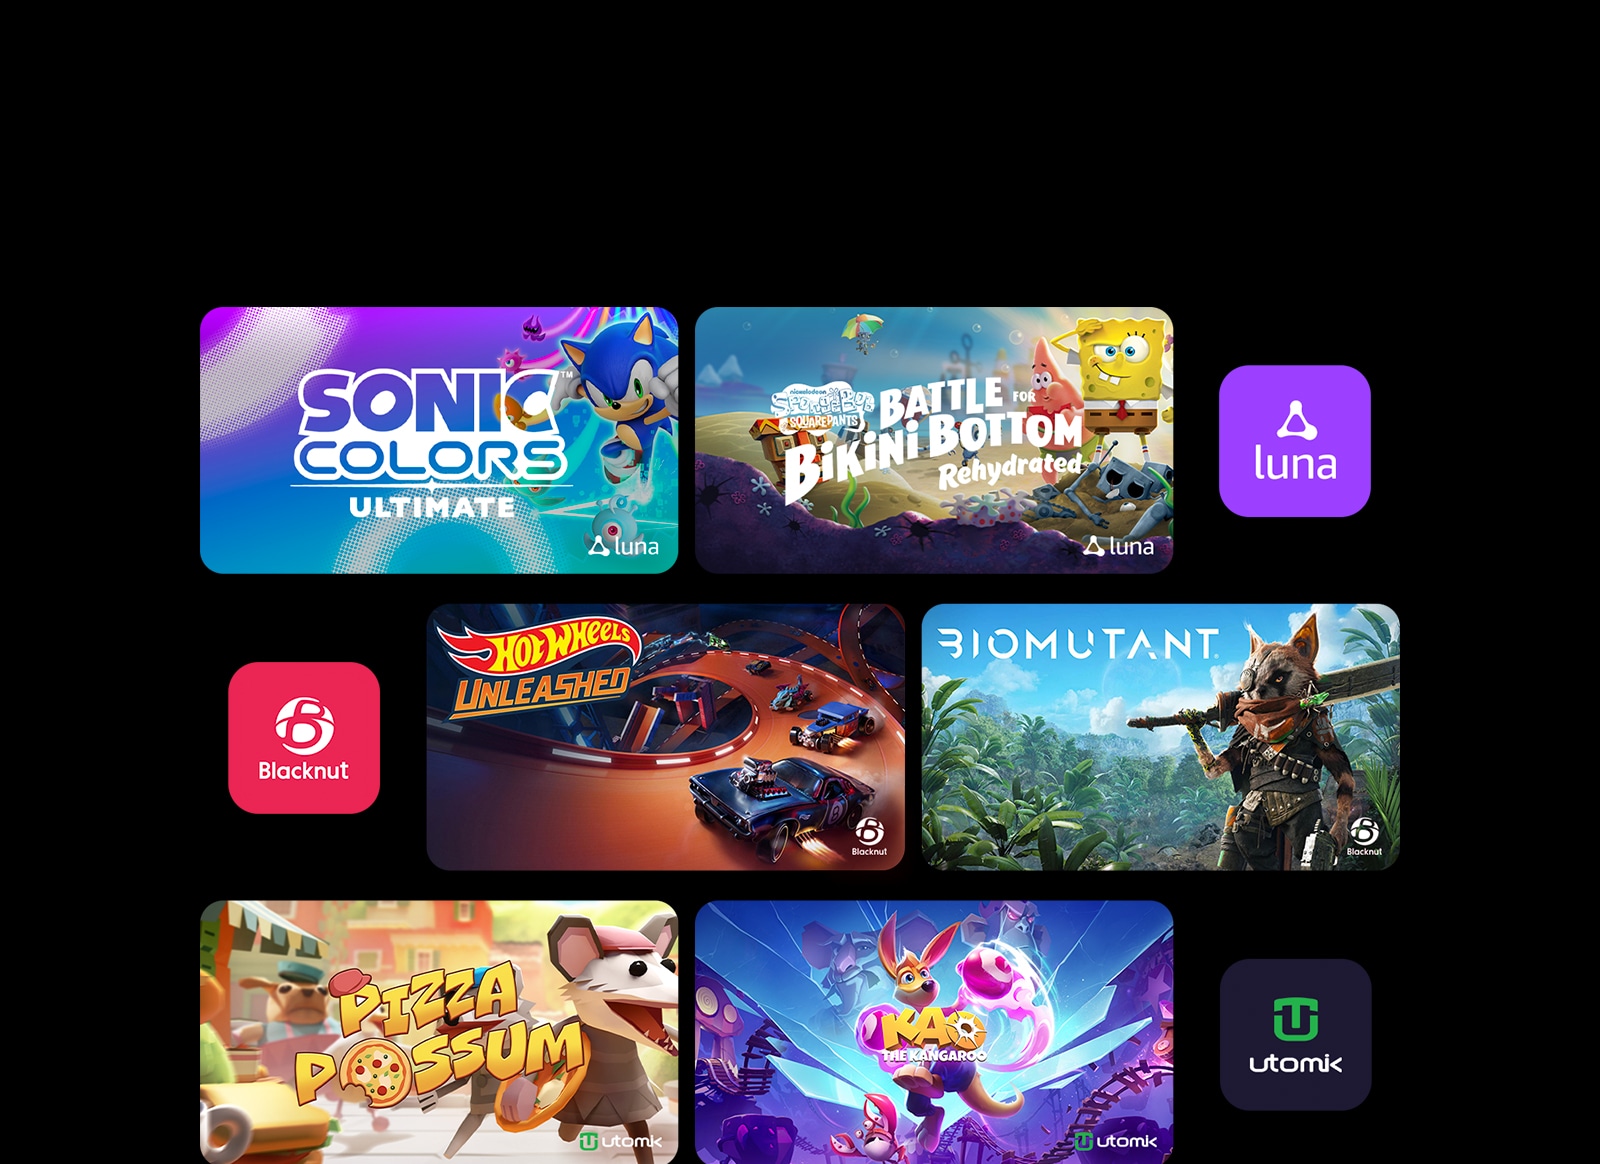 Zobrazujú sa exkluzívne herné tituly hry „Sonic Colors:Ultimate“ a „Play SpongeBob:Battle for Bikini Bottom – Rehydrated“ od spoločnosti Luna, „HOT WHEELS UNLEASHED“ a „BIOMUTANT“ od spoločnosti Blacknut, „Pizza Possum“ a „Kao the Kangaroo“ od cloudovej hernej platformy Utomik.